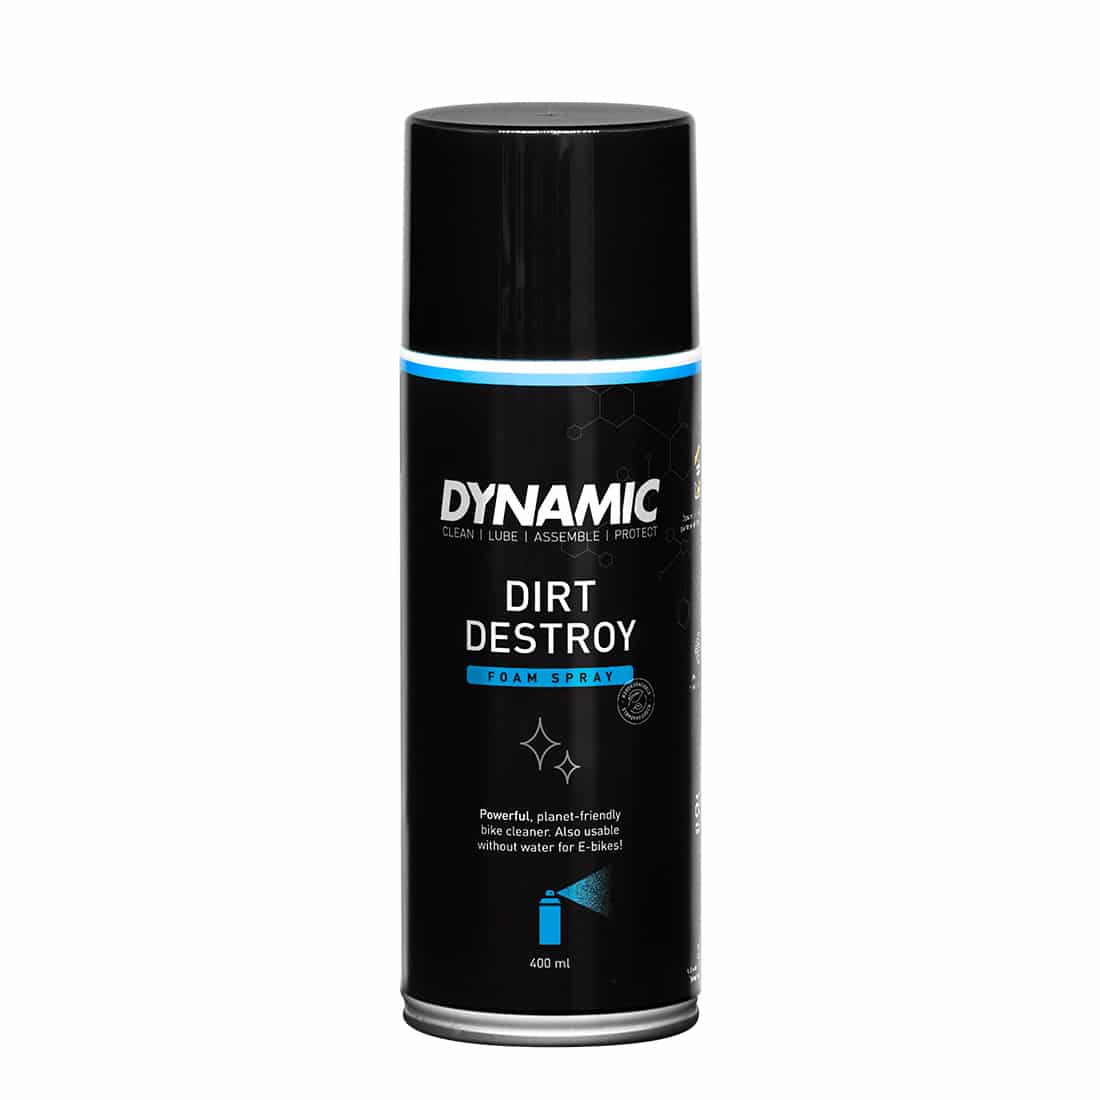 Produktbild von Dynamic Dirt Destroy Fahrradreiniger - Schaum-Spray - 400ml